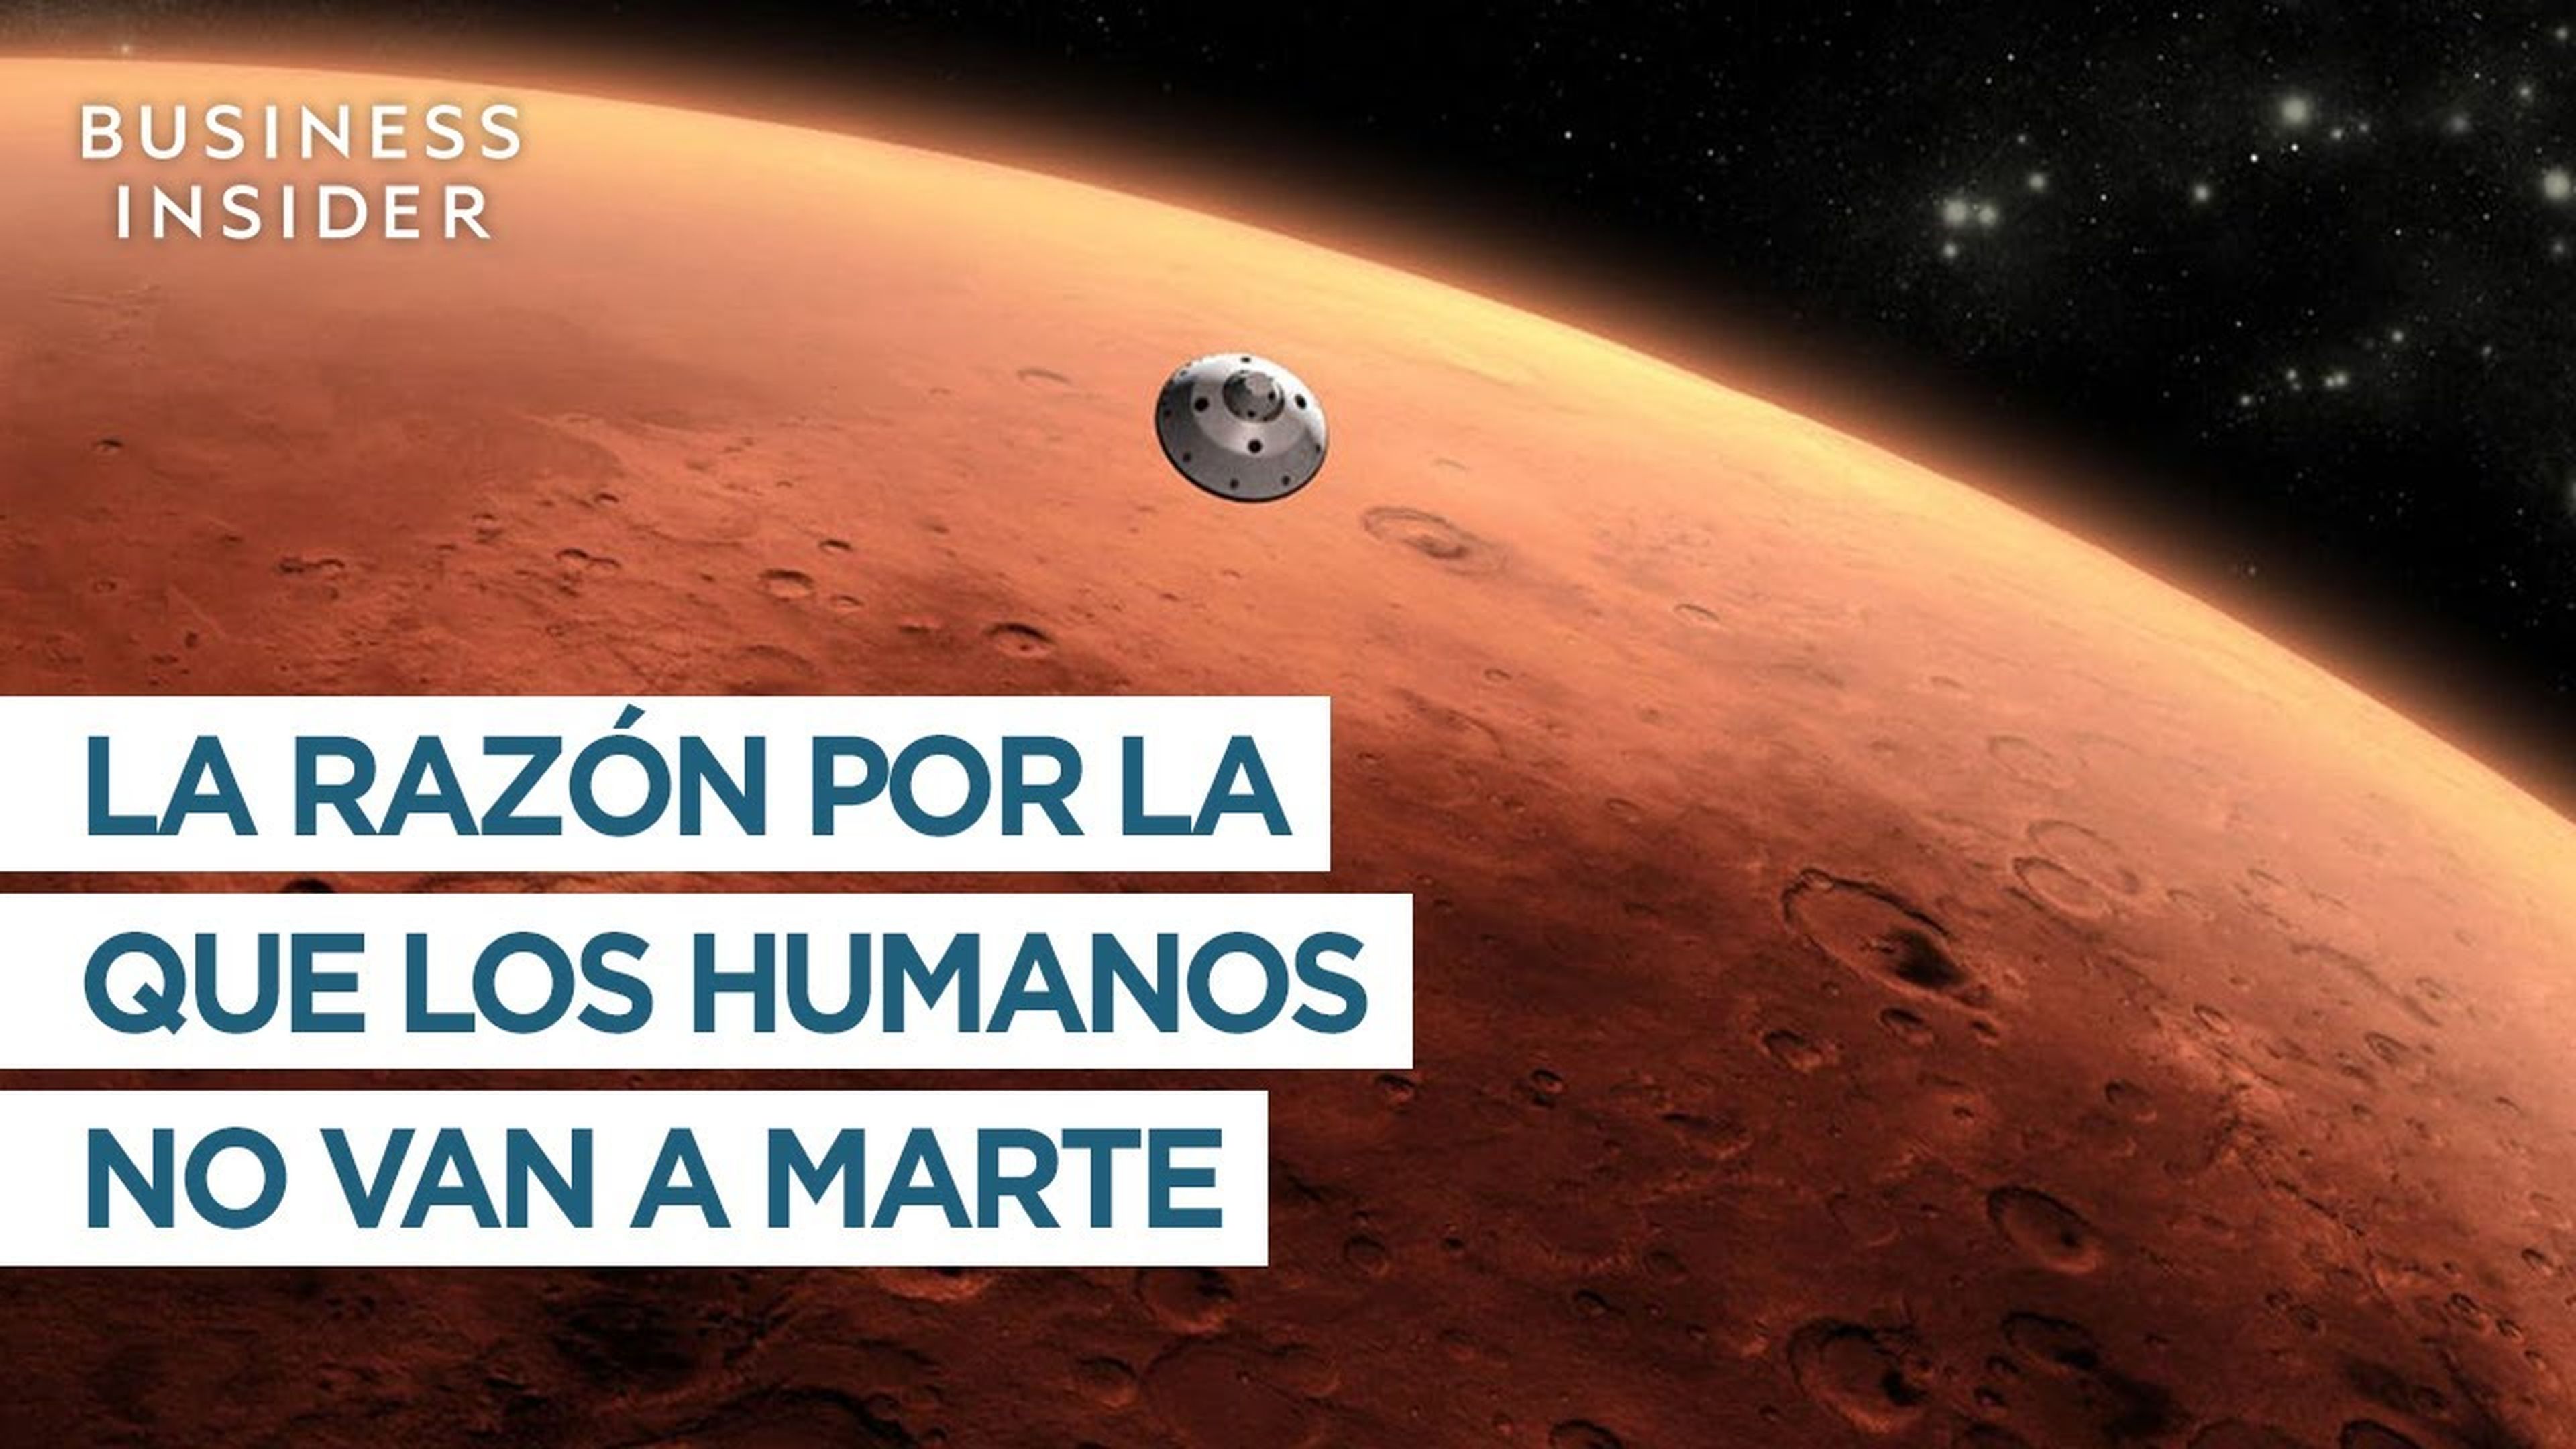 La razón por la que los humanos no van a Marte